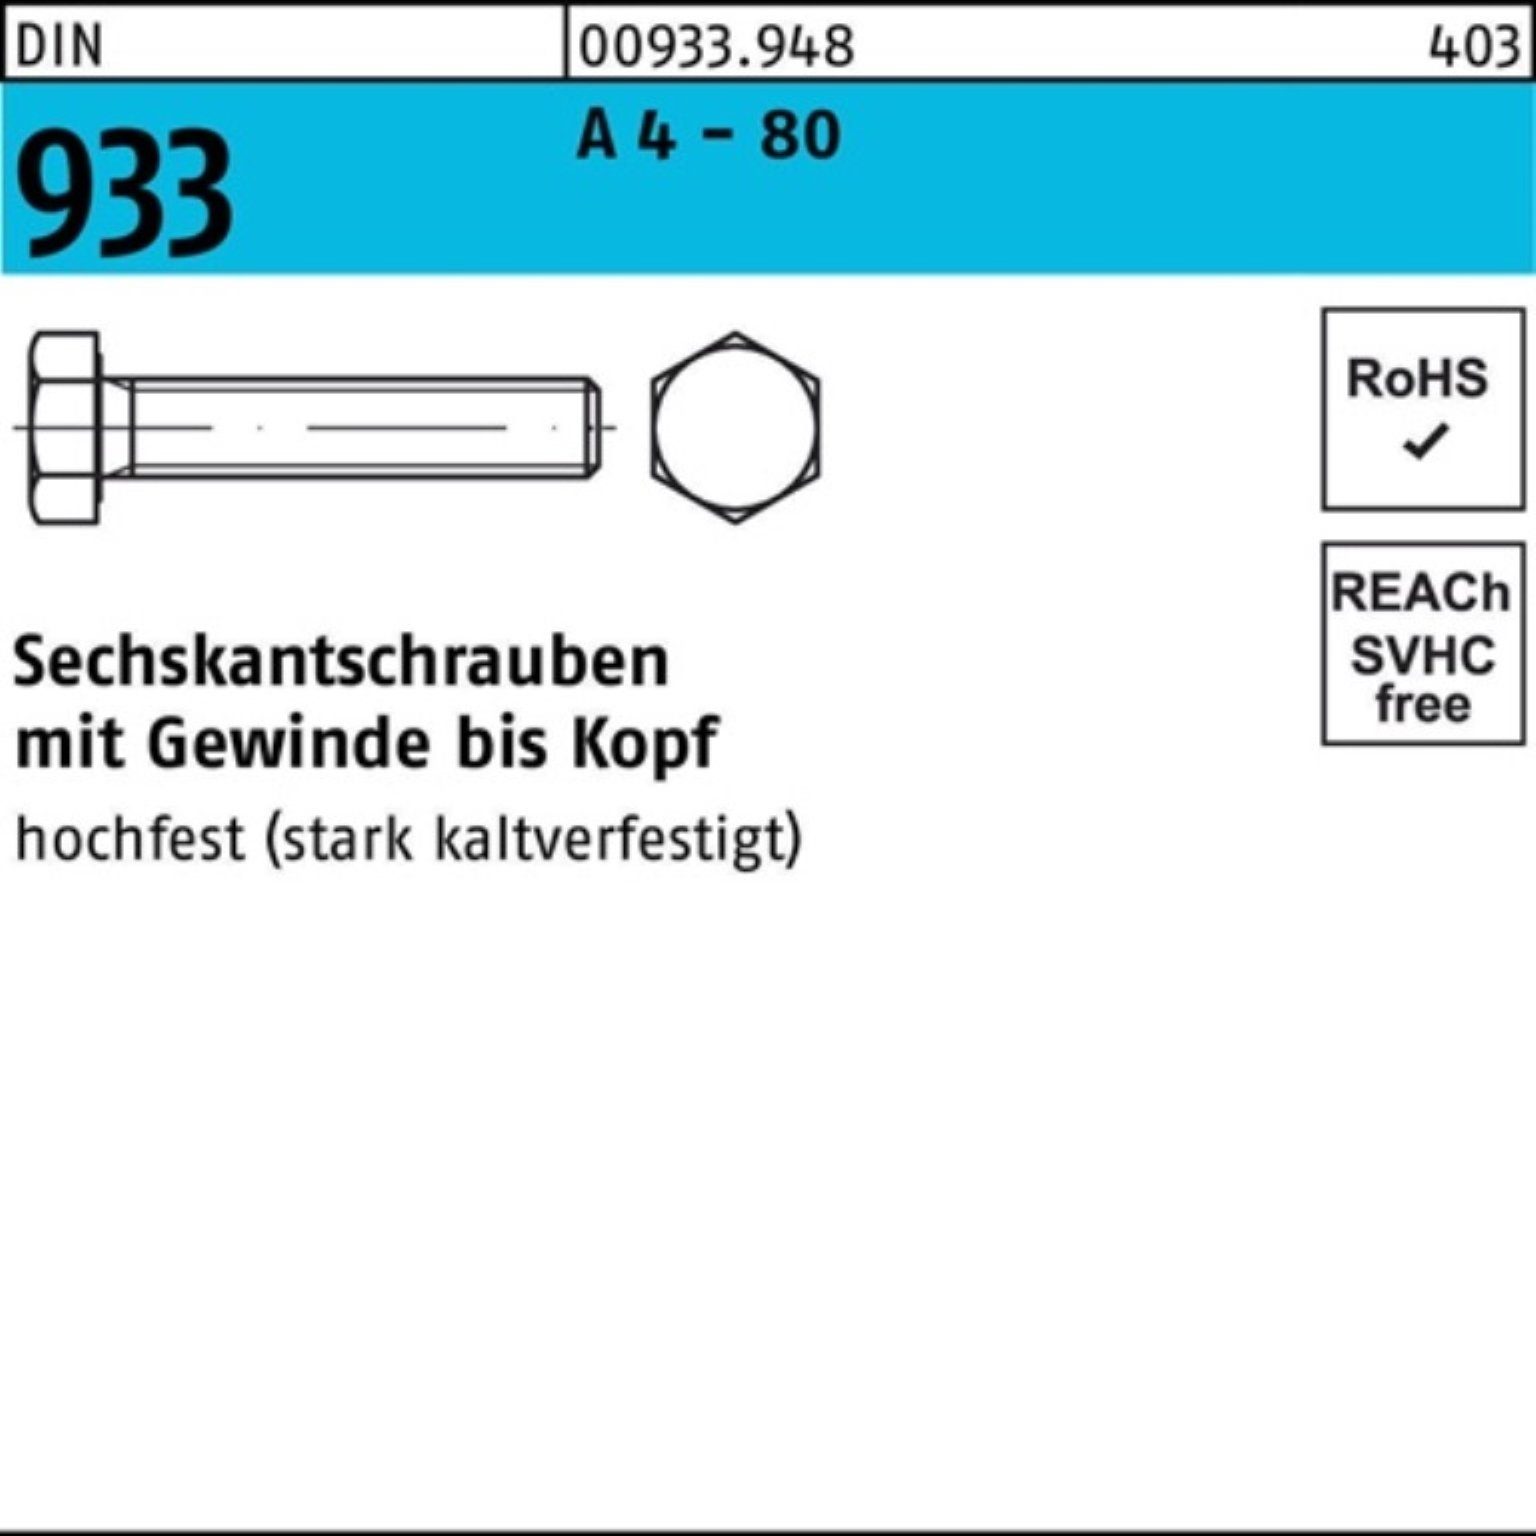 Reyher Sechskantschraube 100er Pack Sechskantschraube DIN 933 VG M16x 180 A 4 - 80 1 Stück DIN